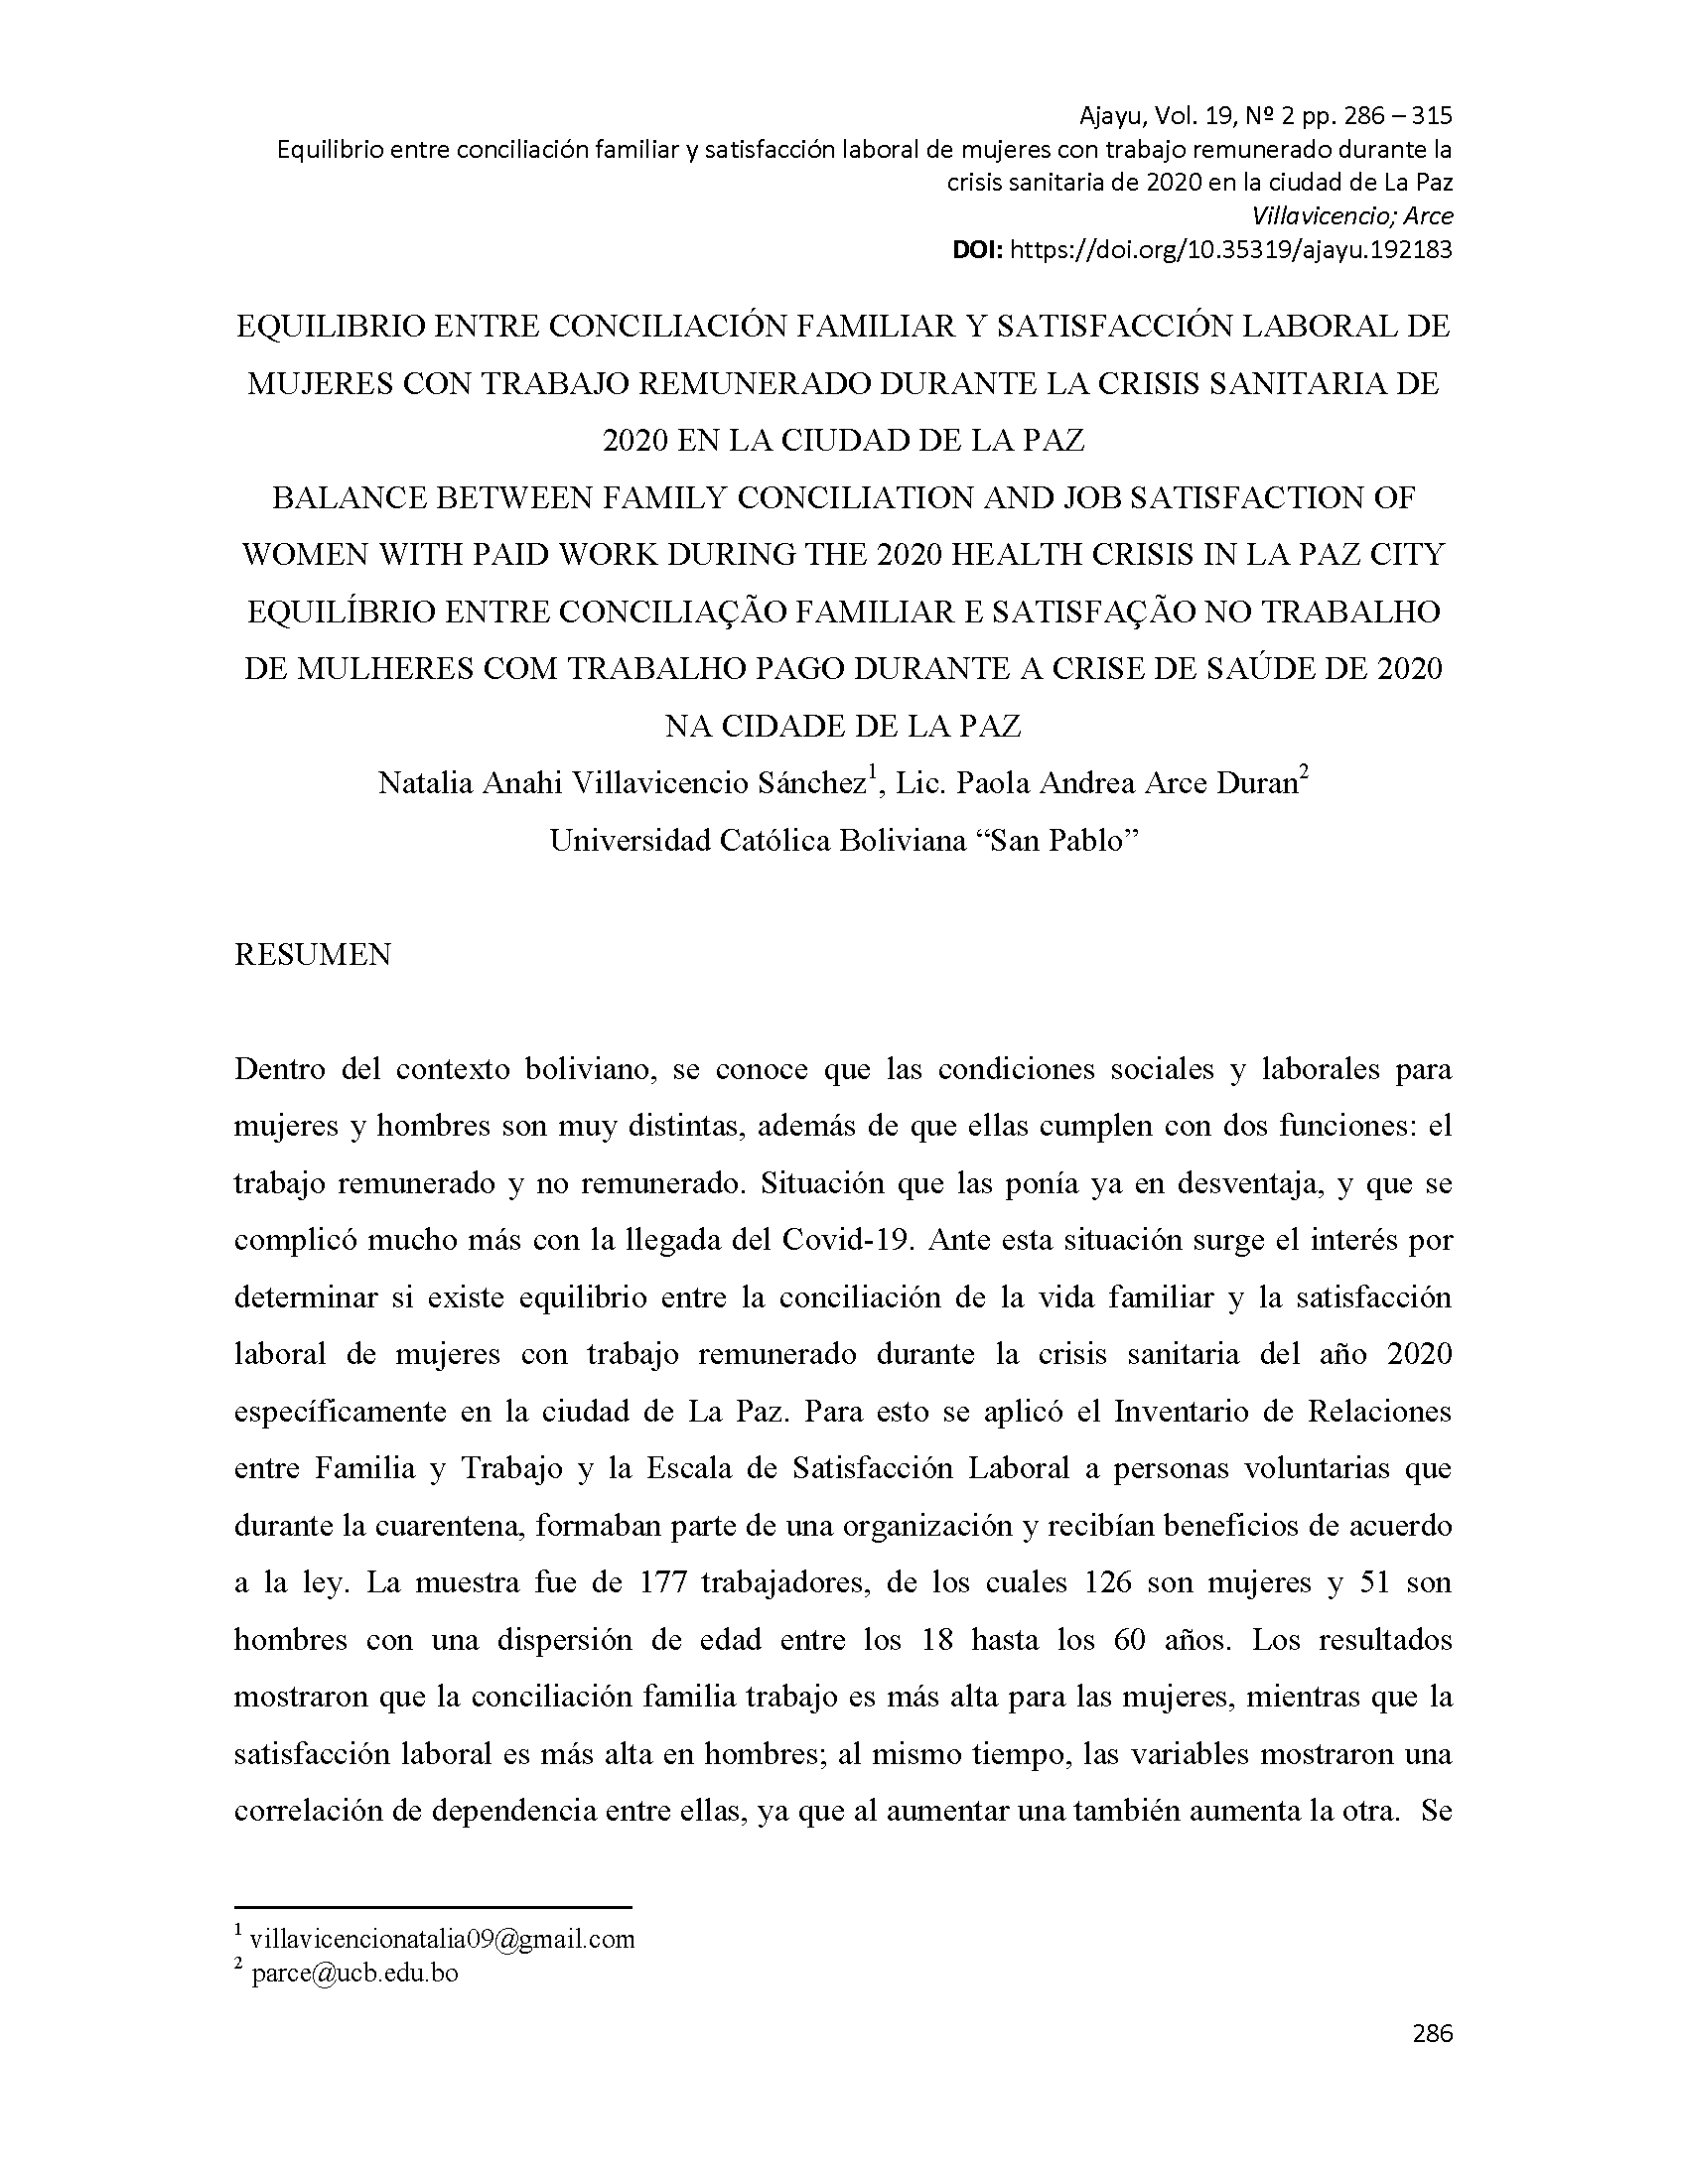 Equilibrio entre conciliación familiar y satisfacción laboral de mujeres con trabajo remunerado durante la crisis sanitaria del 2020 en la ciudad de La Paz 